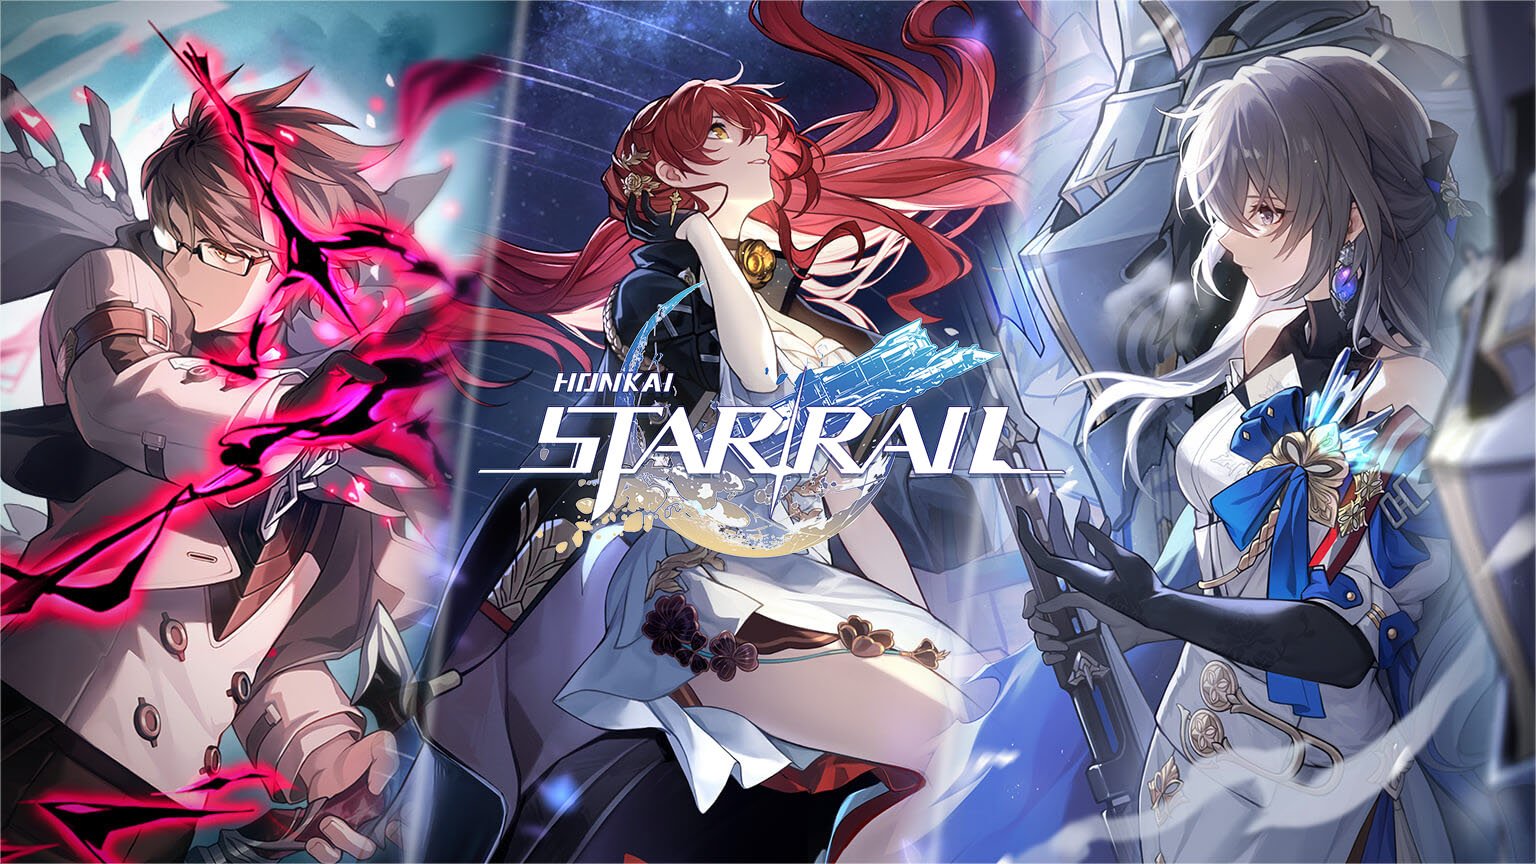 Honkai: Star Rail announced for PC, iOS, and Android – Gematsu